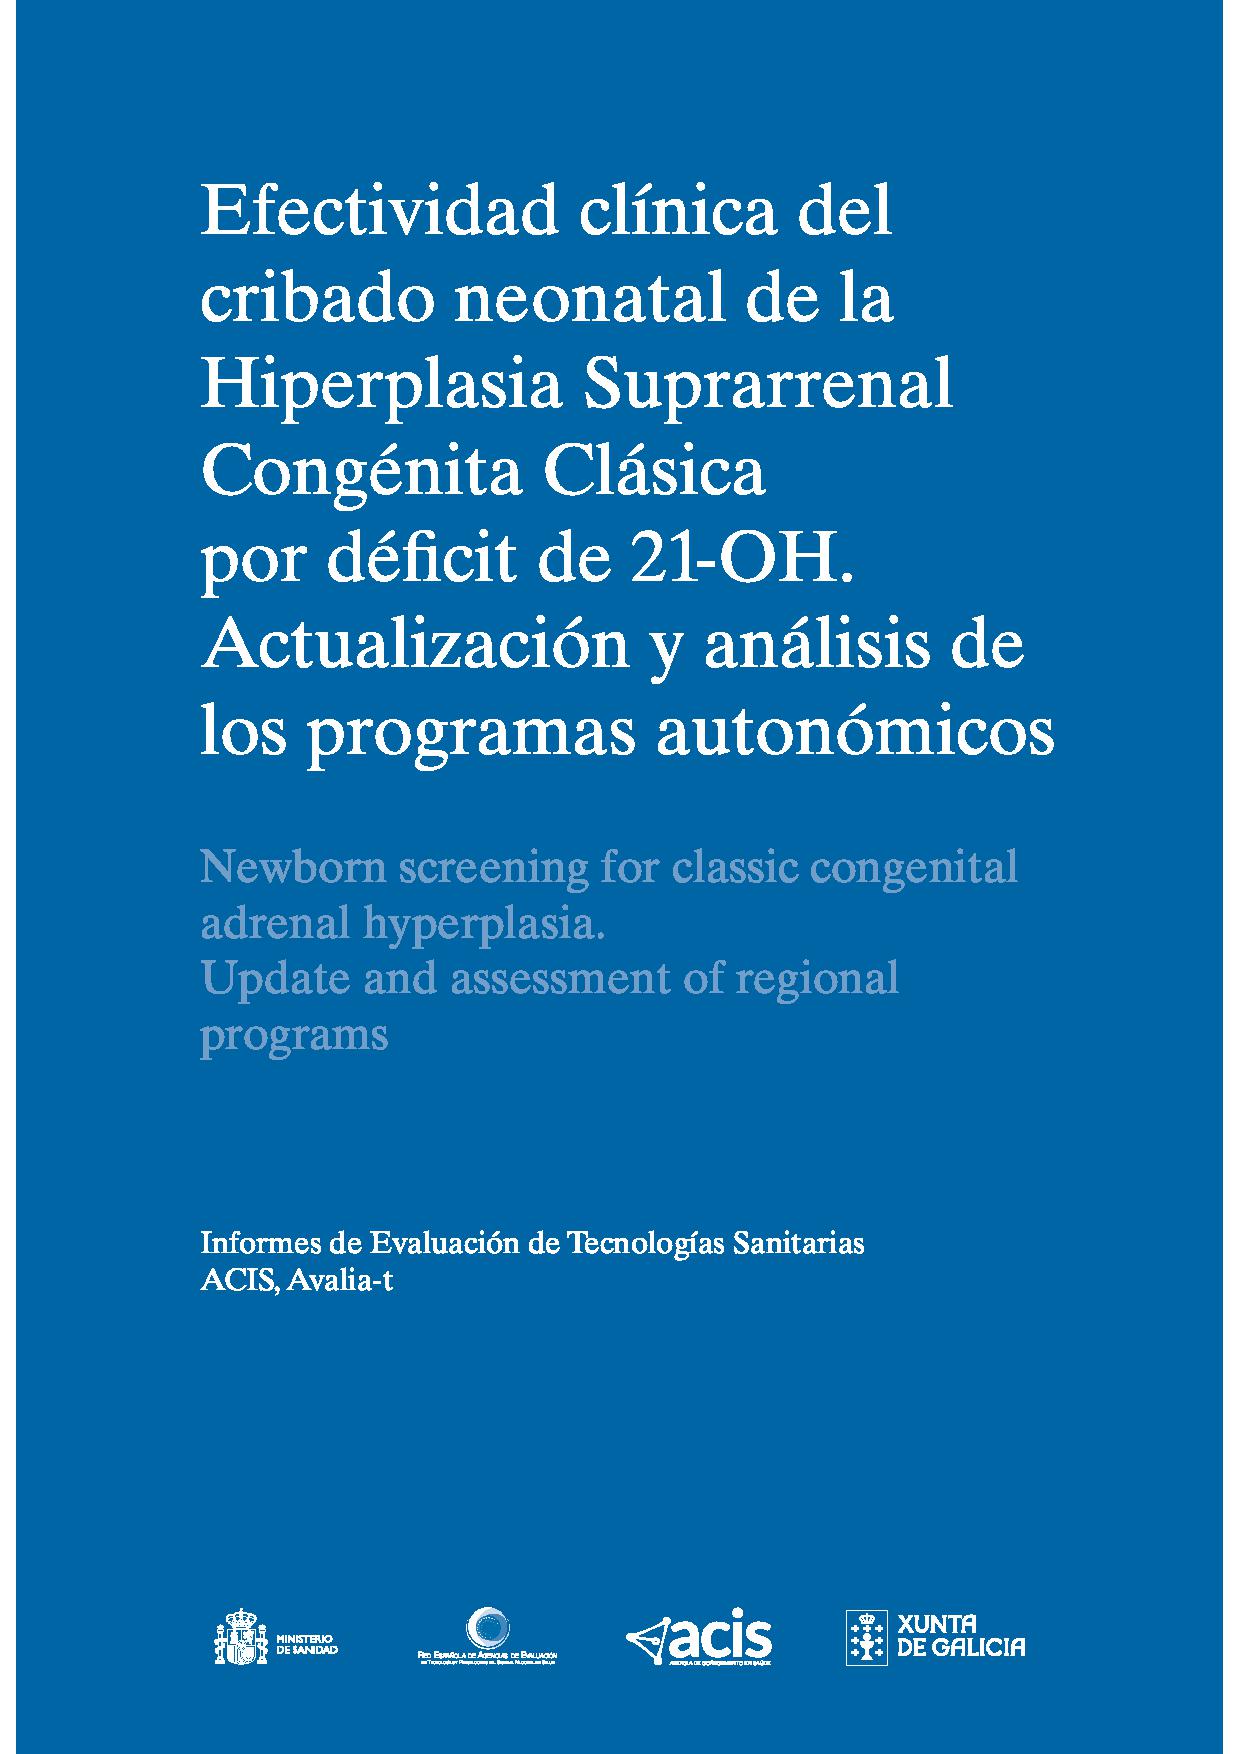 Imagen de portada del libro Efectividad clínica del cribado neonatal de la Hiperplasia Suprarrenal Congénita Clásica por déficit de 21-OH. Actualización y análisis de los programas autonómicos